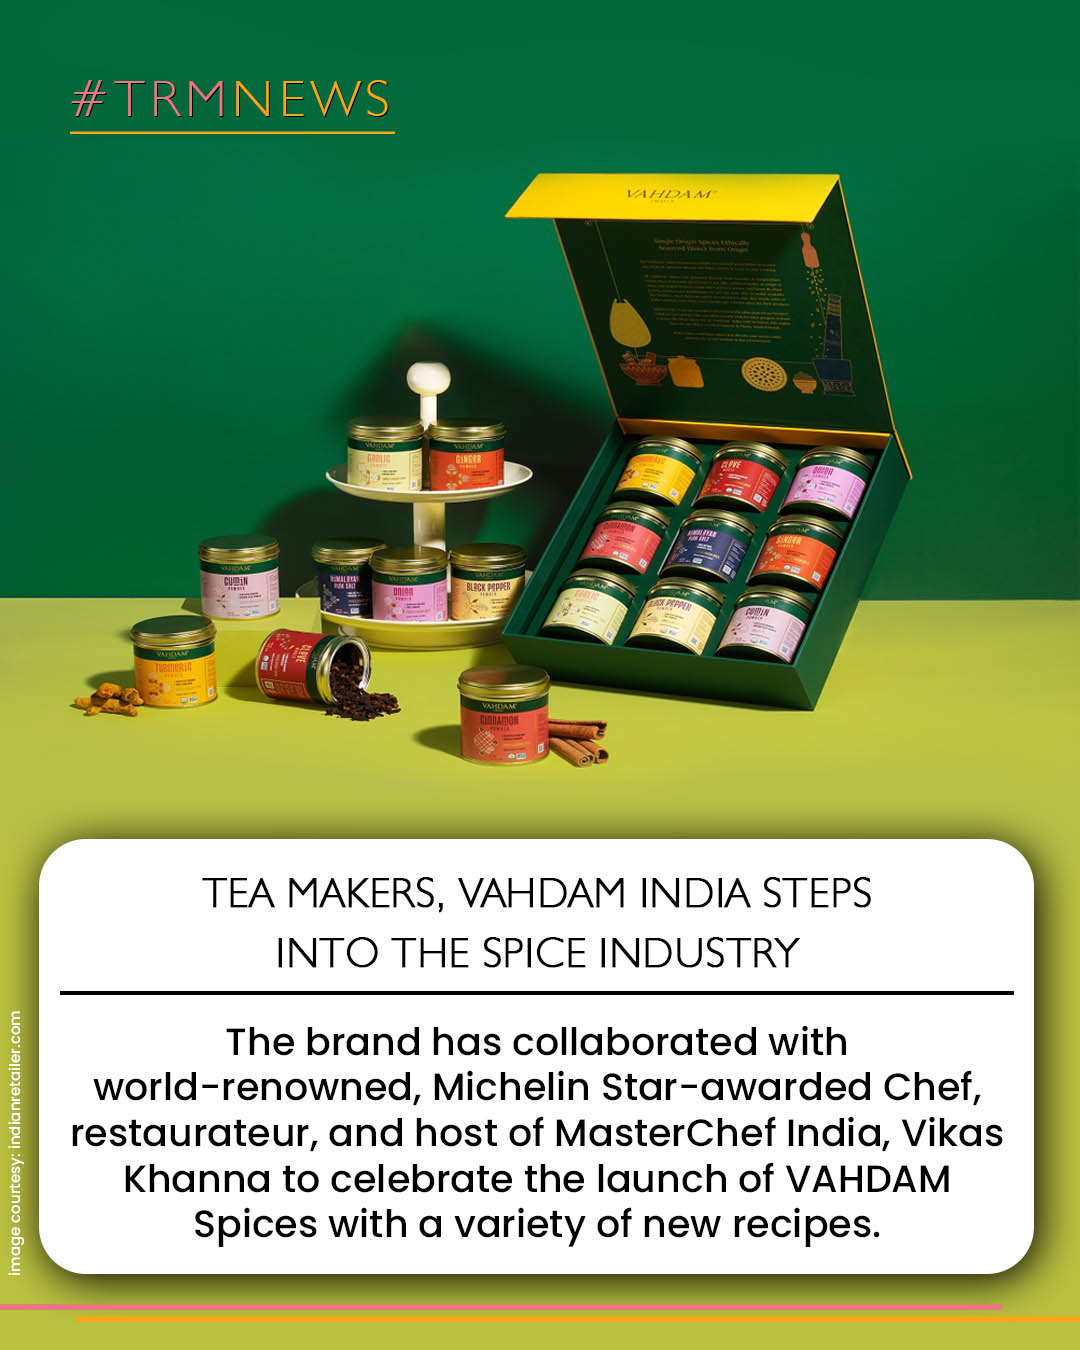 vahdam india
vikas khanna
spices
vahdam spices